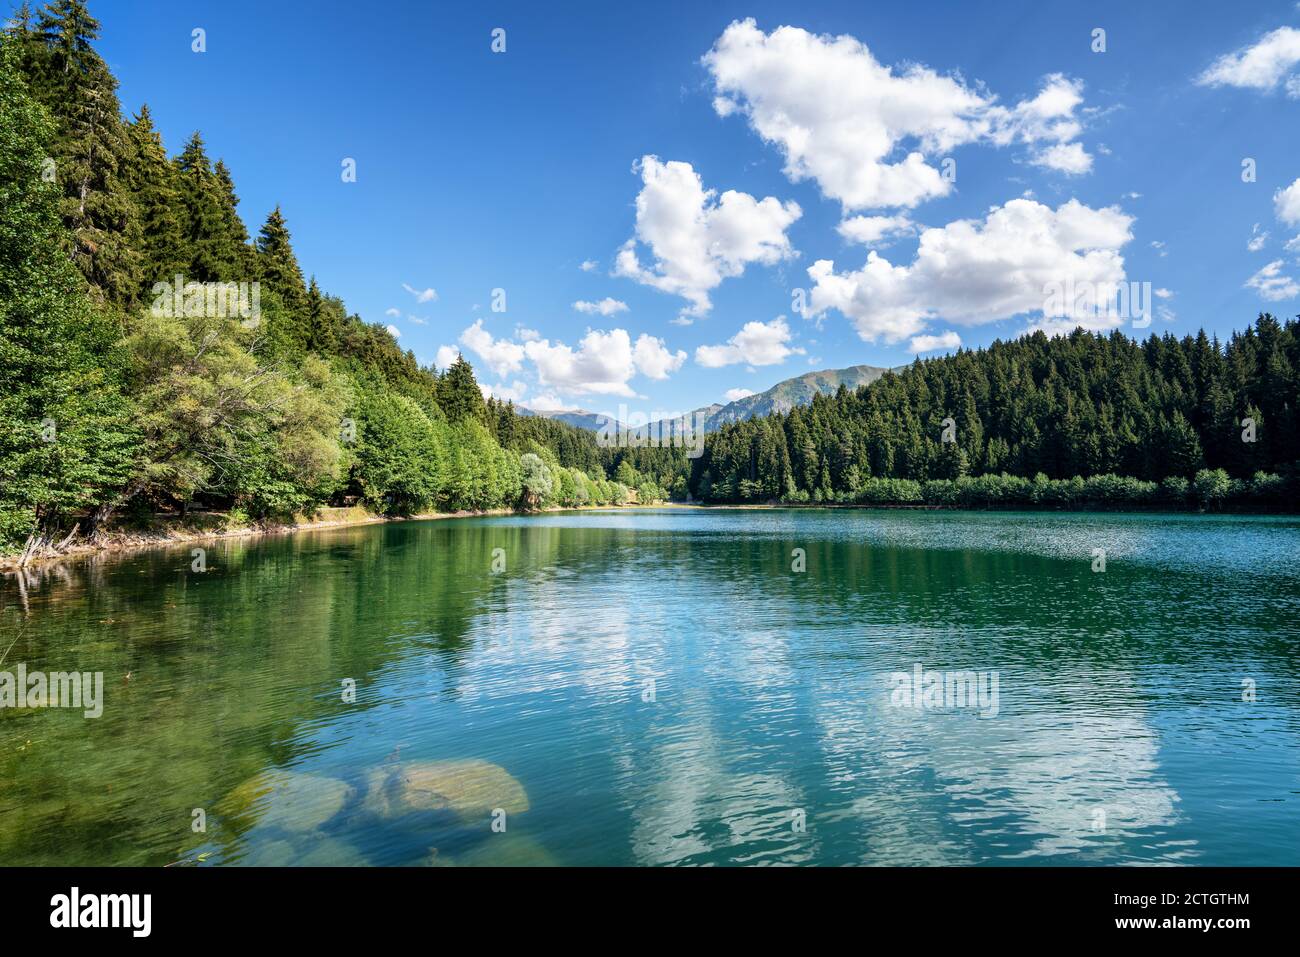 Belle vue sur un lac avec un ciel pluffy nuageux et un fond de montagne. Concept de tourisme de voyage. Photo de haute qualité Banque D'Images